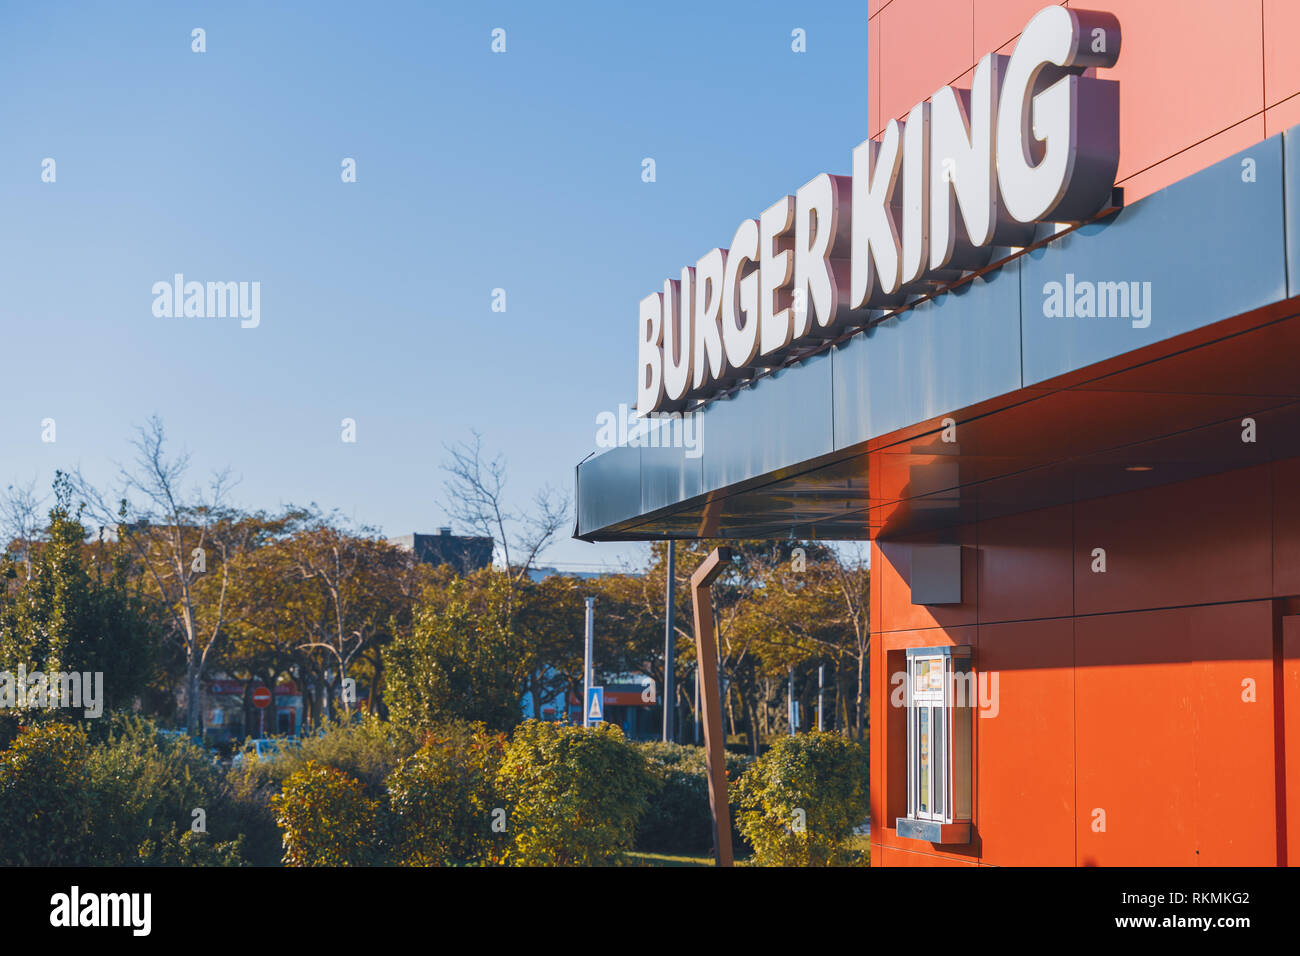 Oeiras, Portogallo - 01/05/19: Burger King Drive thru attraverso in poeti Park Oeiras, parcheggio, e moderno edificio di colore rosso e nero i colori e luminoso b Foto Stock